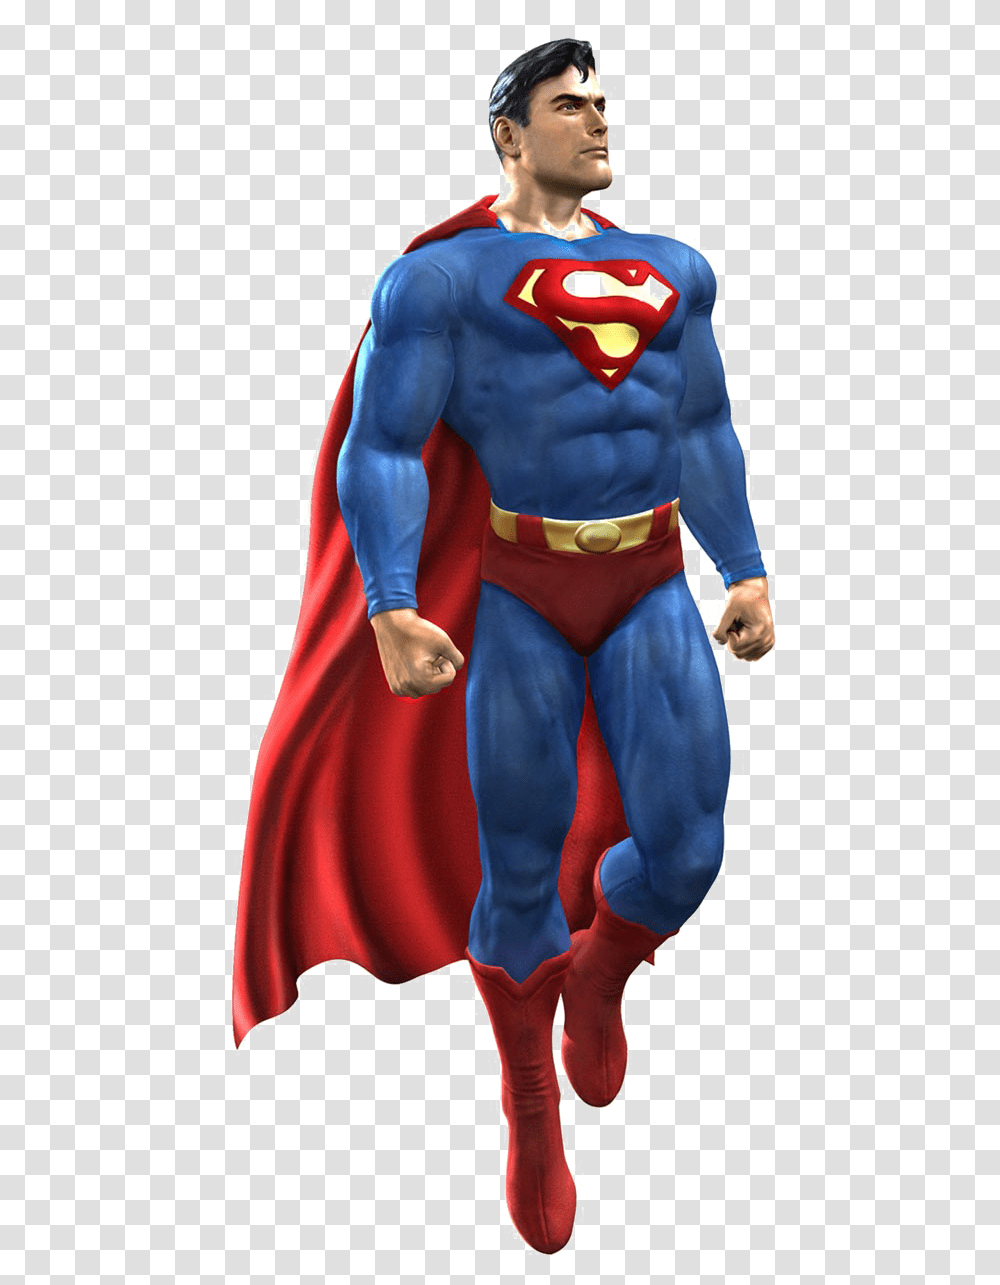 Superman Clark Kent Man Of Steel Batman Lois Lane Superman, Person, Figurine, Cape Transparent Png